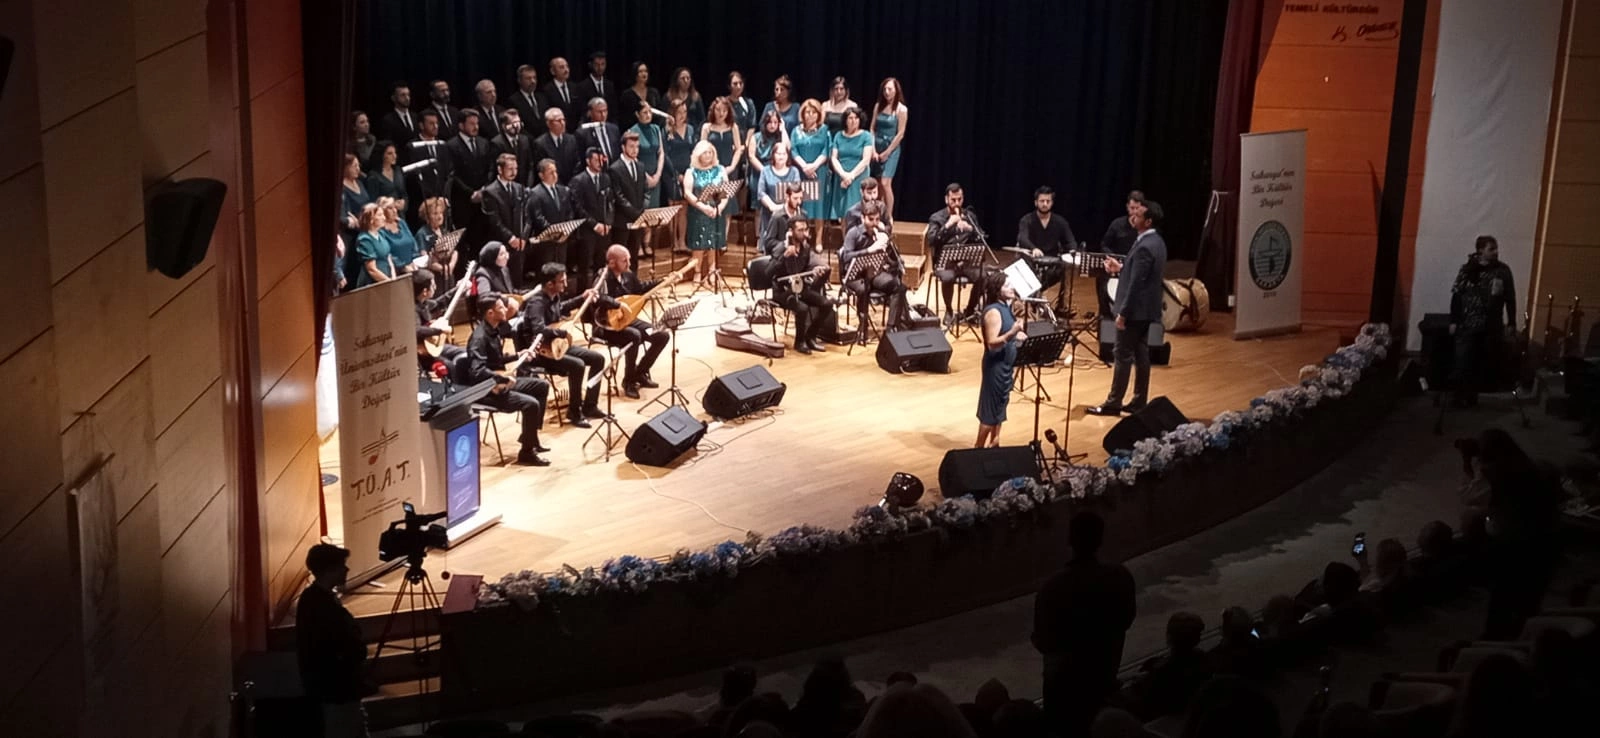 Sakarya Engelliler Birlik Federasyonu, Türk Halk Müziği Kent Topluluğu’nun konserine katıldı